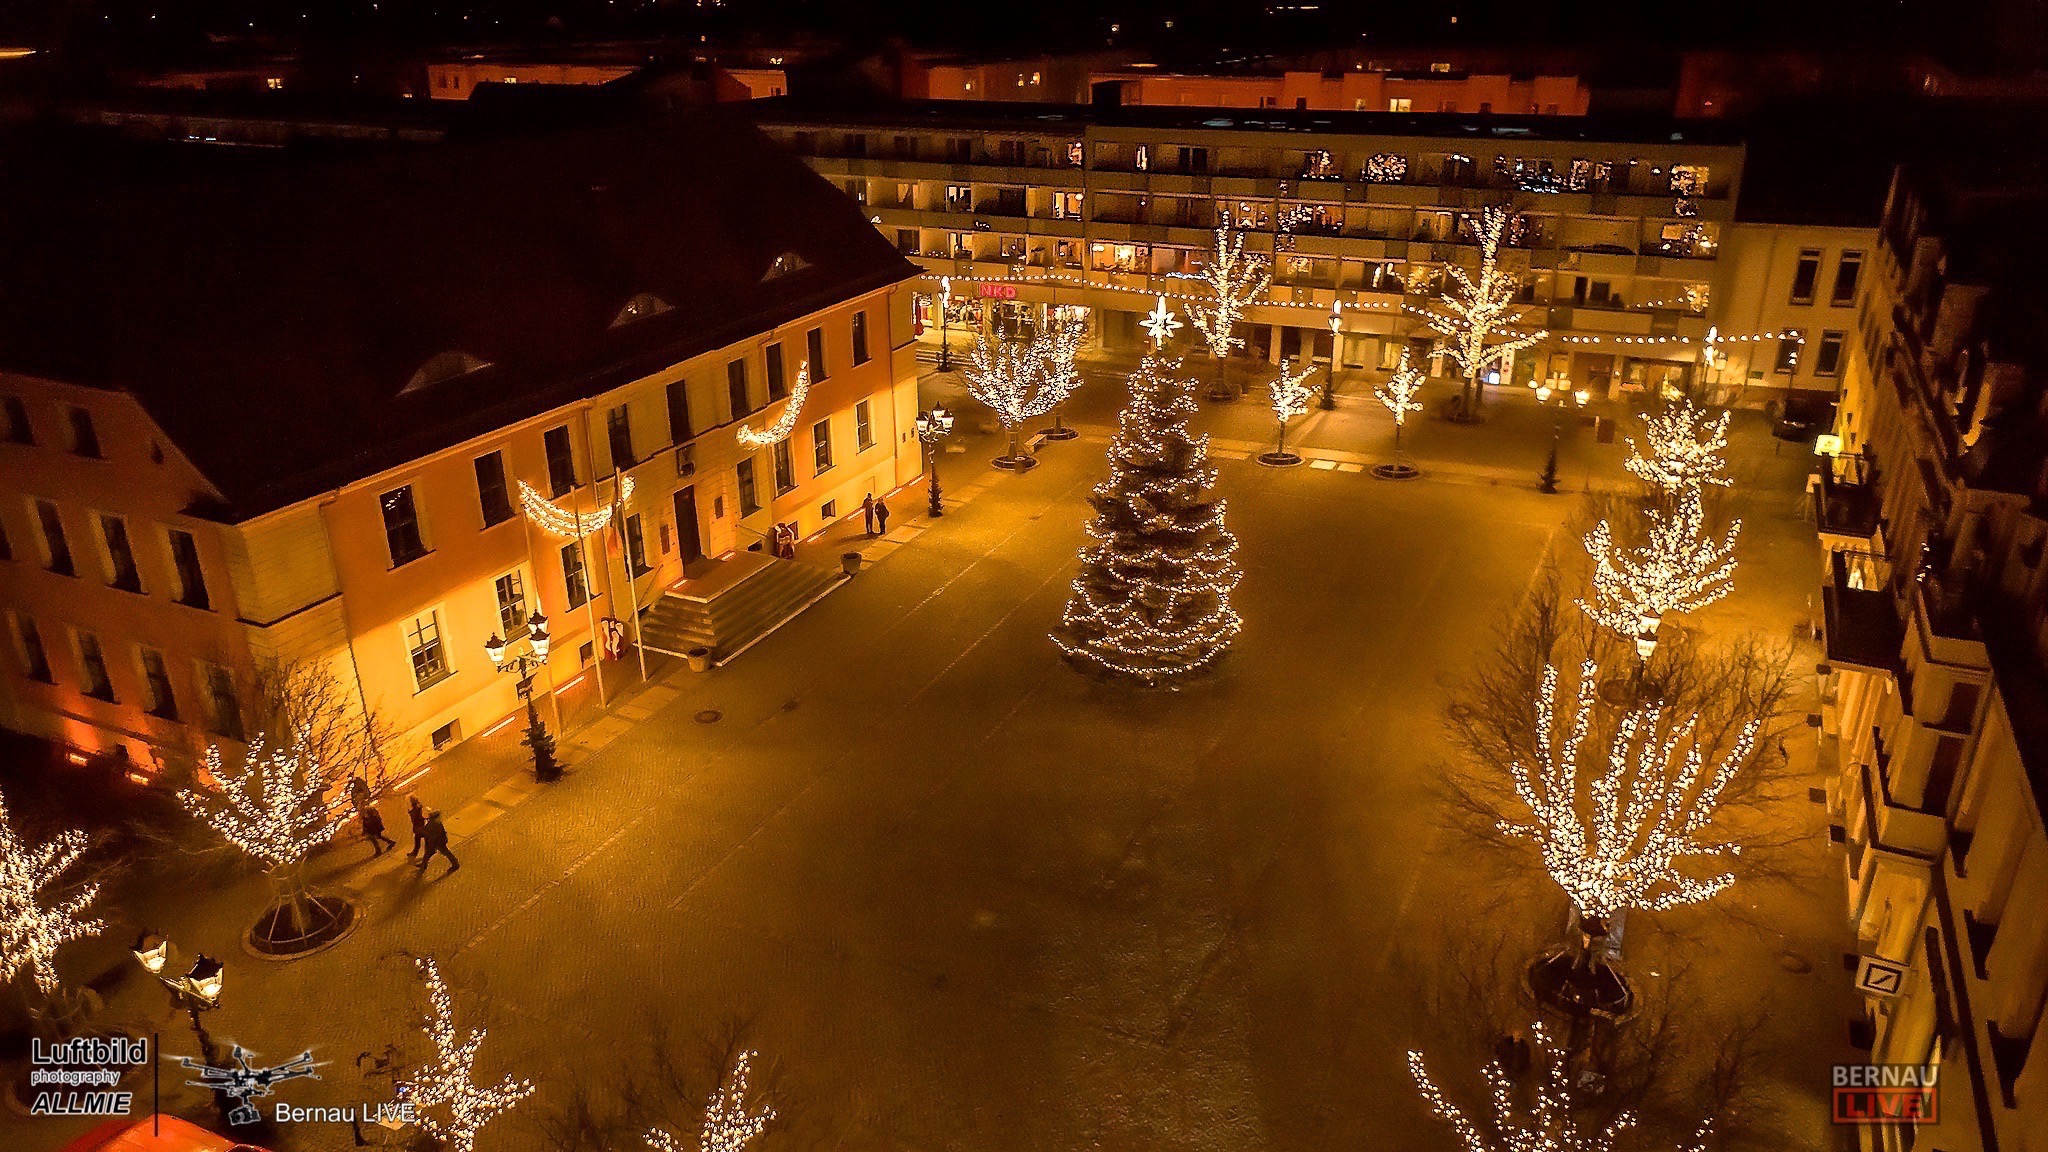 Bernau (er) leuchtet zum 1. Advent mit 150.000 Lichtlein